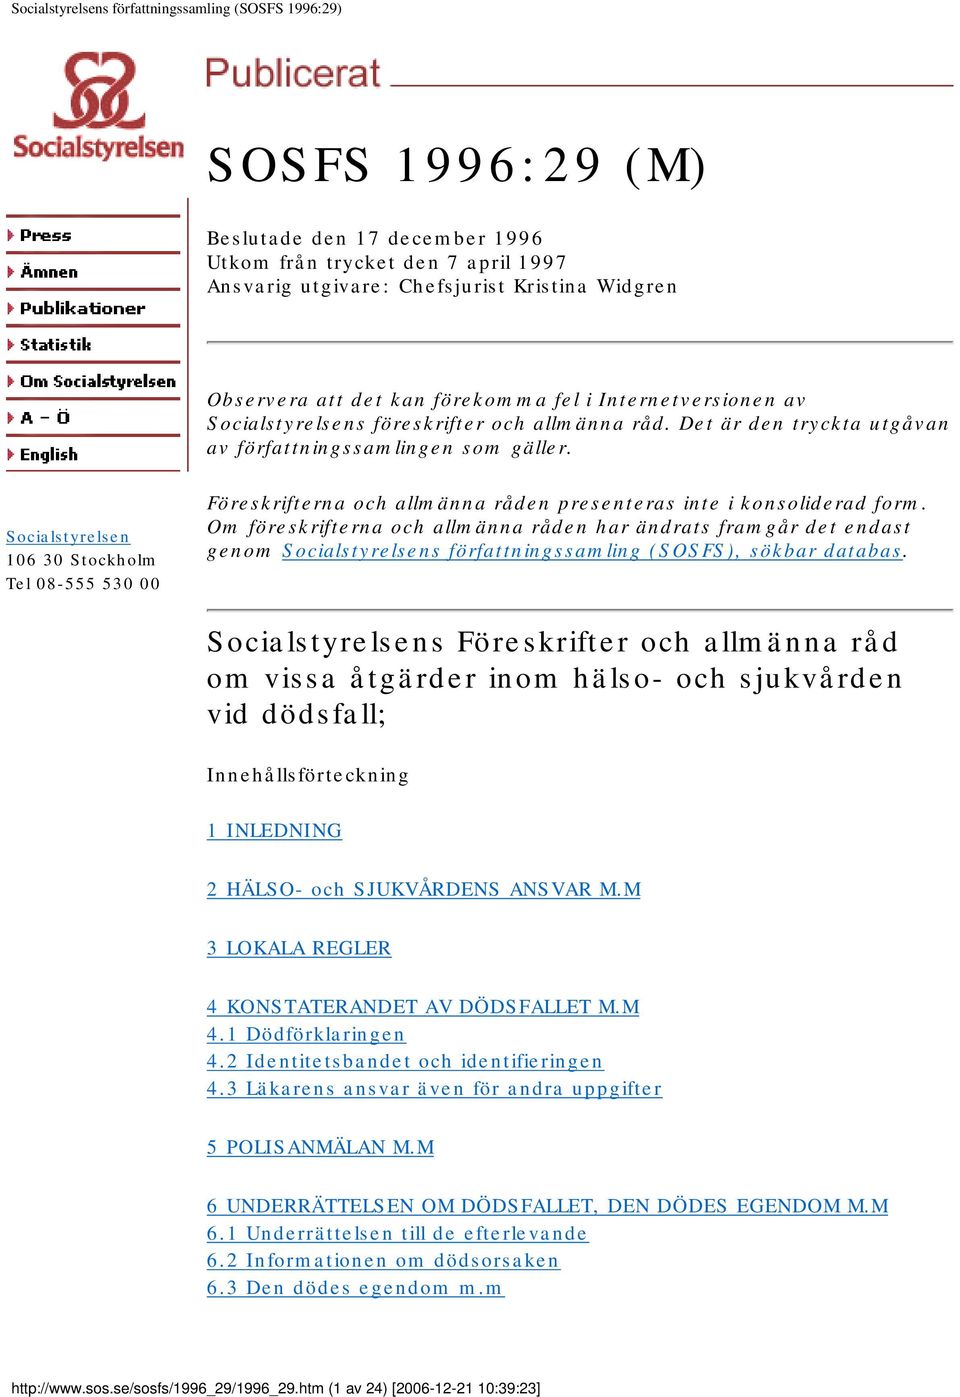 Socialstyrelsen 106 30 Stockholm Tel 08-555 530 00 Föreskrifterna och allmänna råden presenteras inte i konsoliderad form.